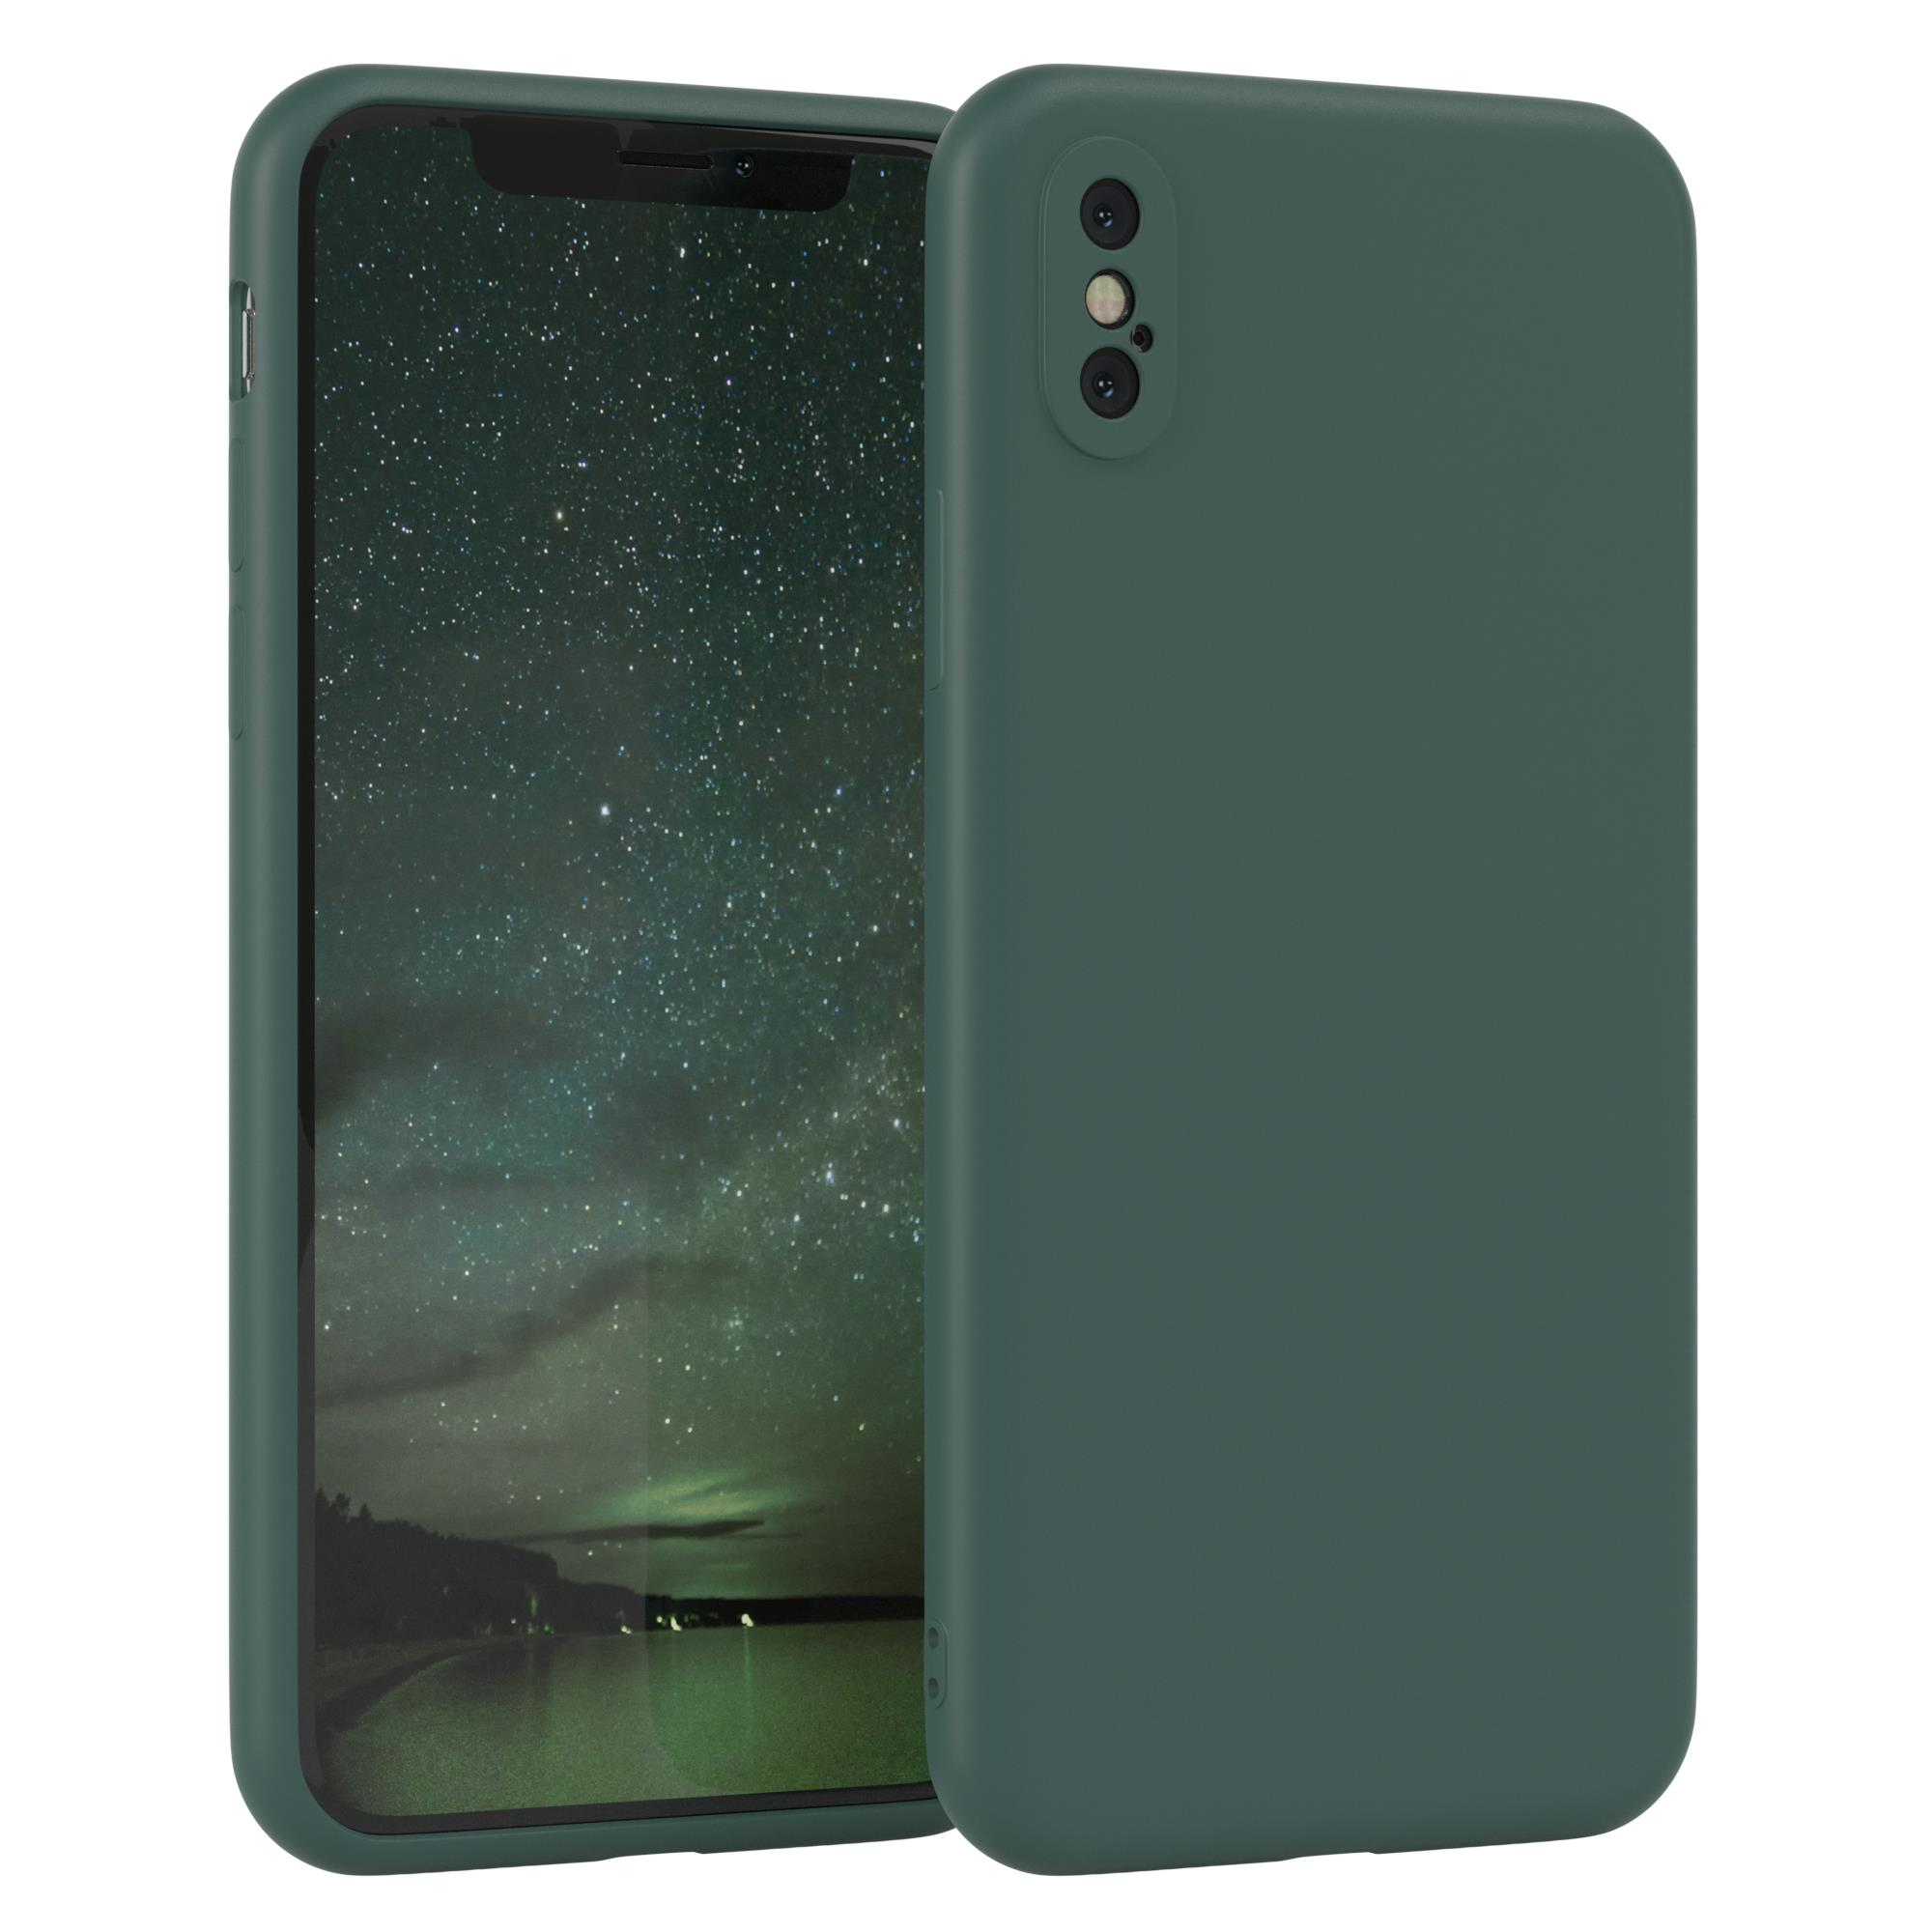 Backcover, Silikon TPU Matt, EAZY CASE Nachtgrün Handycase XS, X / Grün iPhone Apple, /